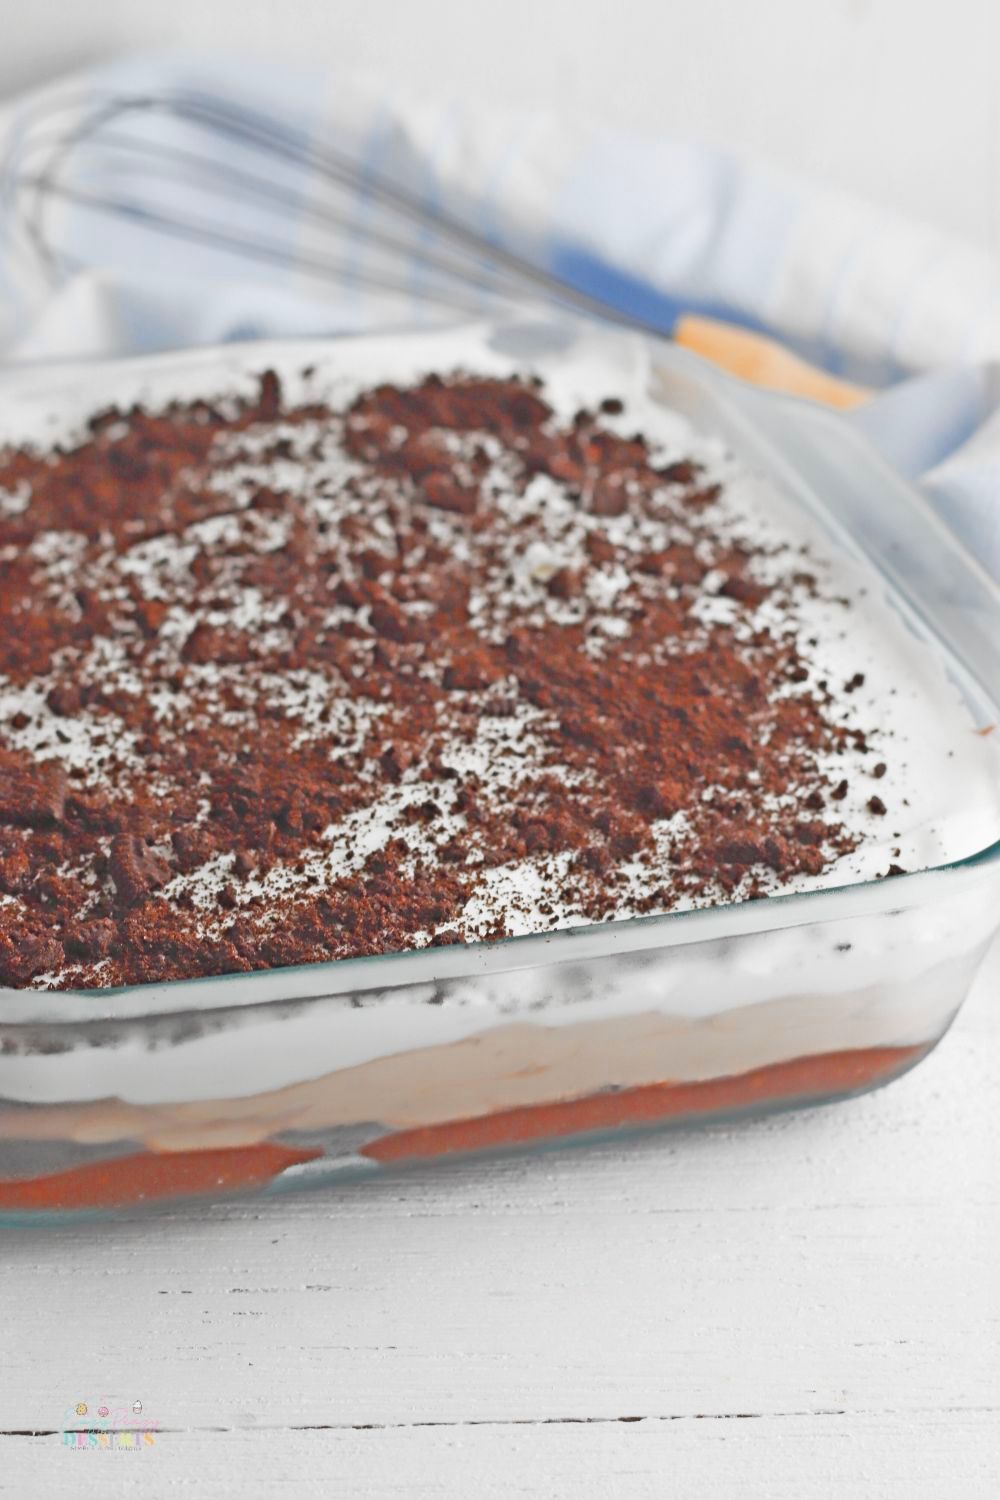 Image of no bake Oreo lasagna layered in a baking dish